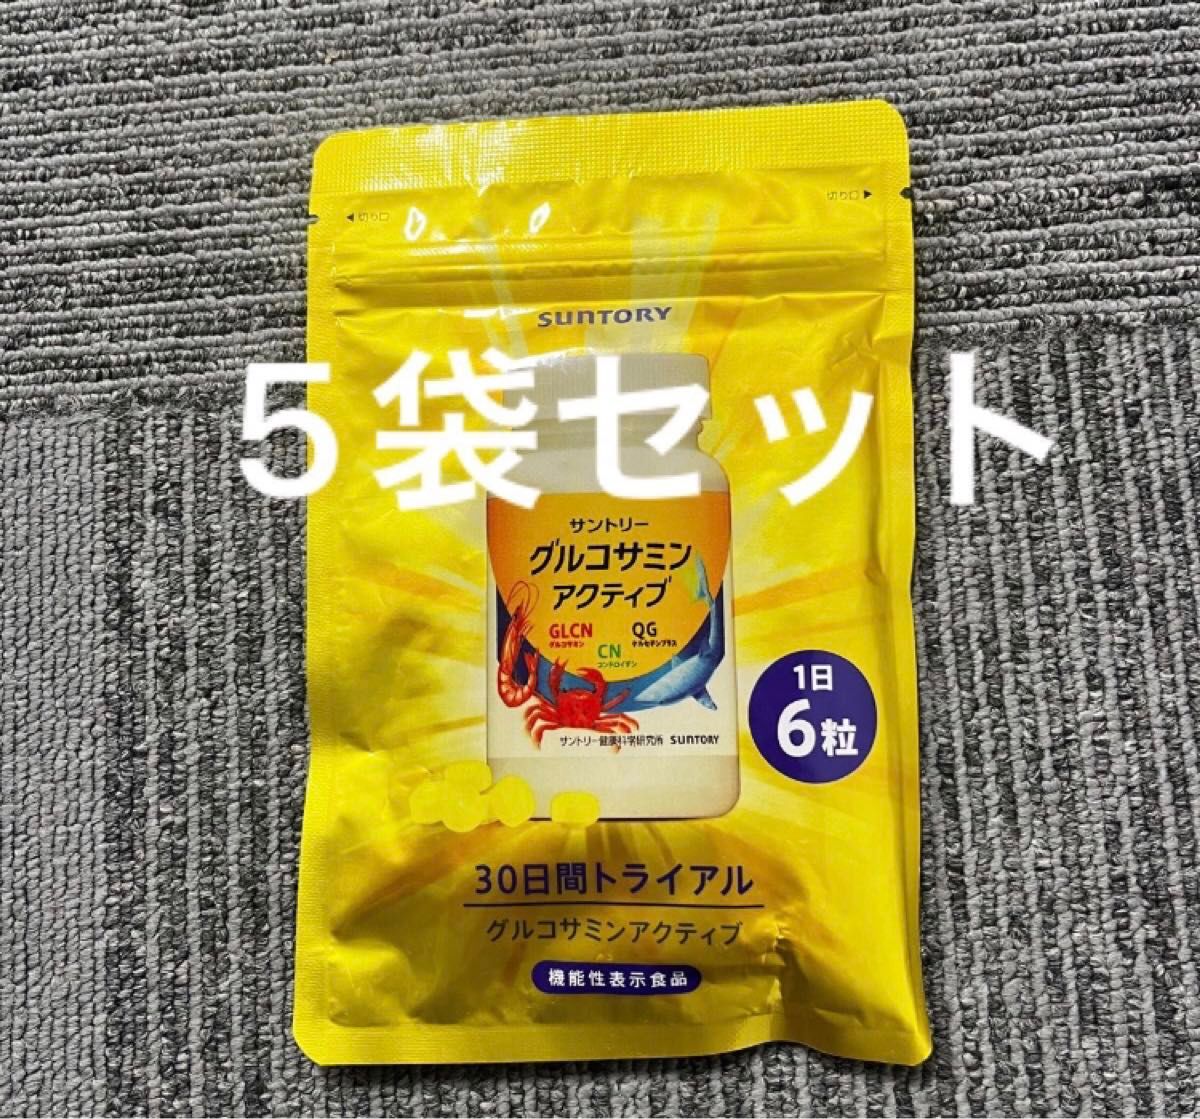 サントリー自然のちから グルコサミン アクティブ☆5袋セット